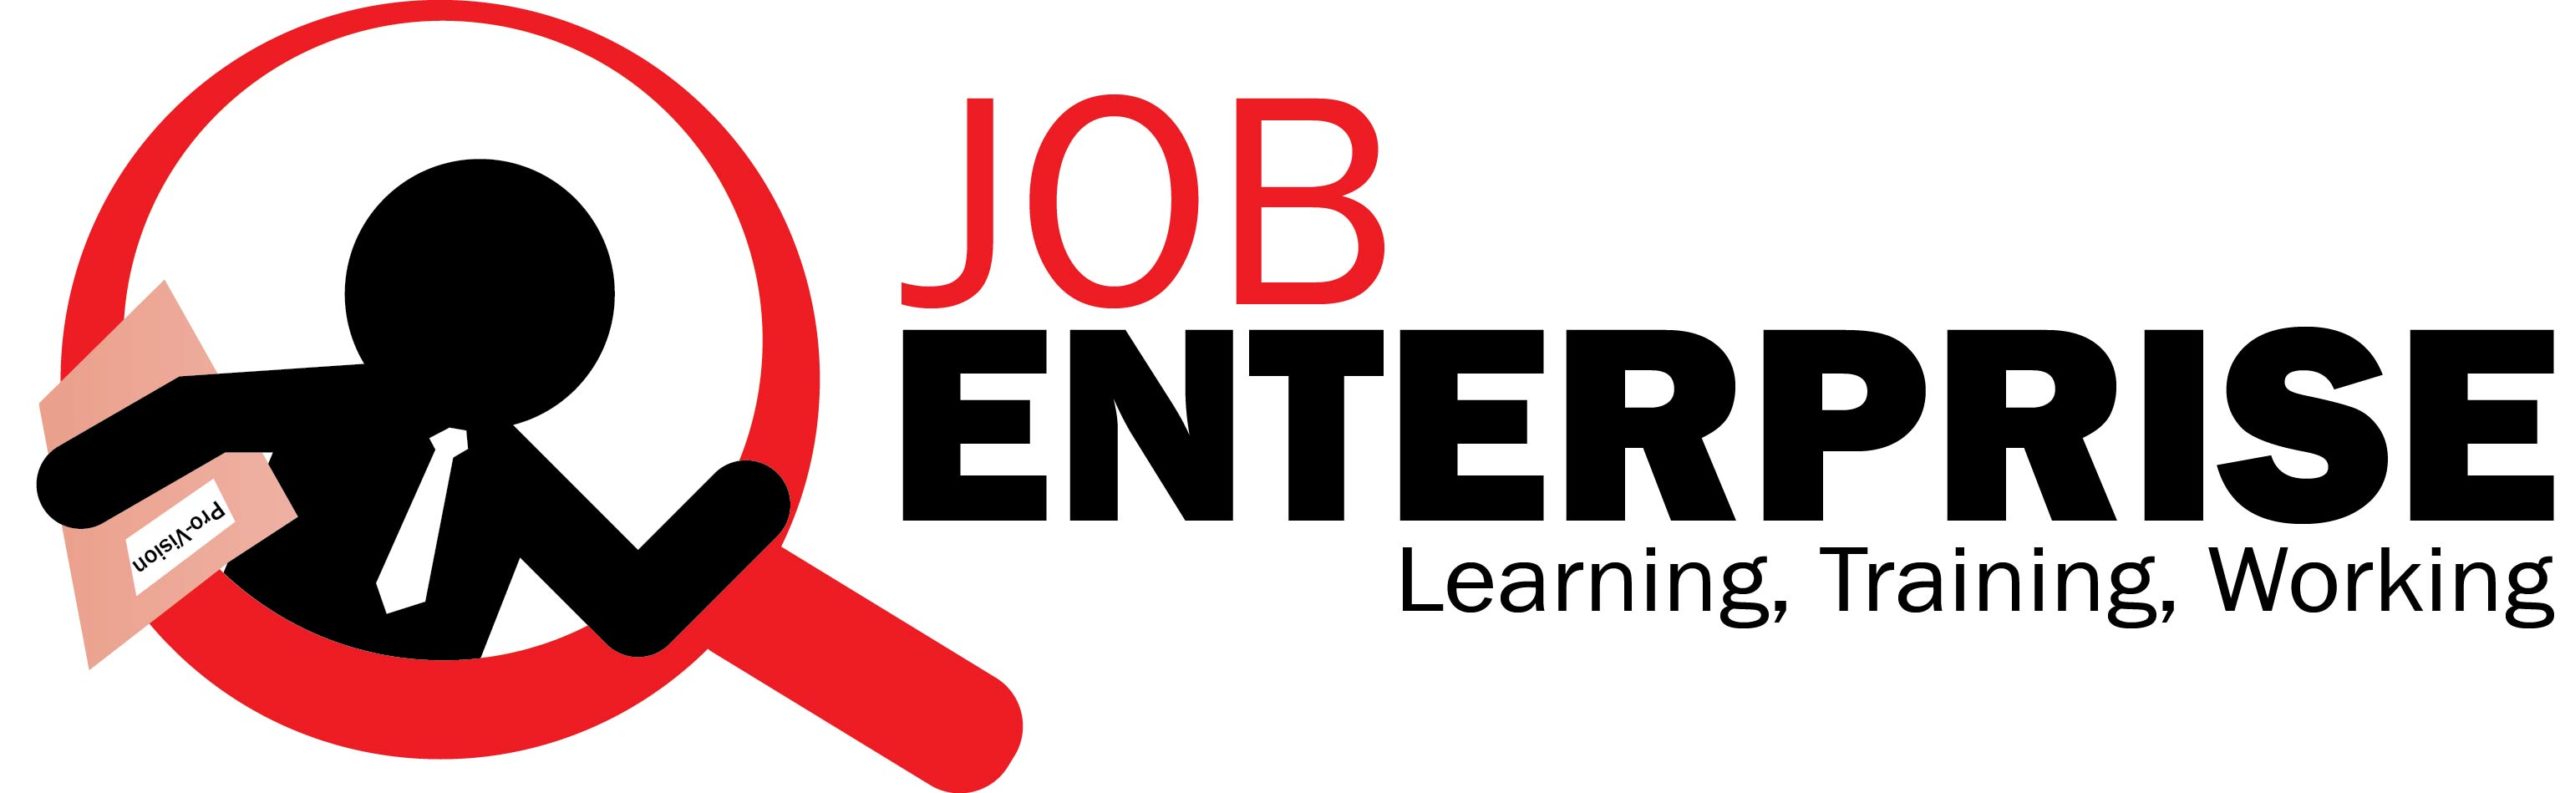 Job Enterprise logo